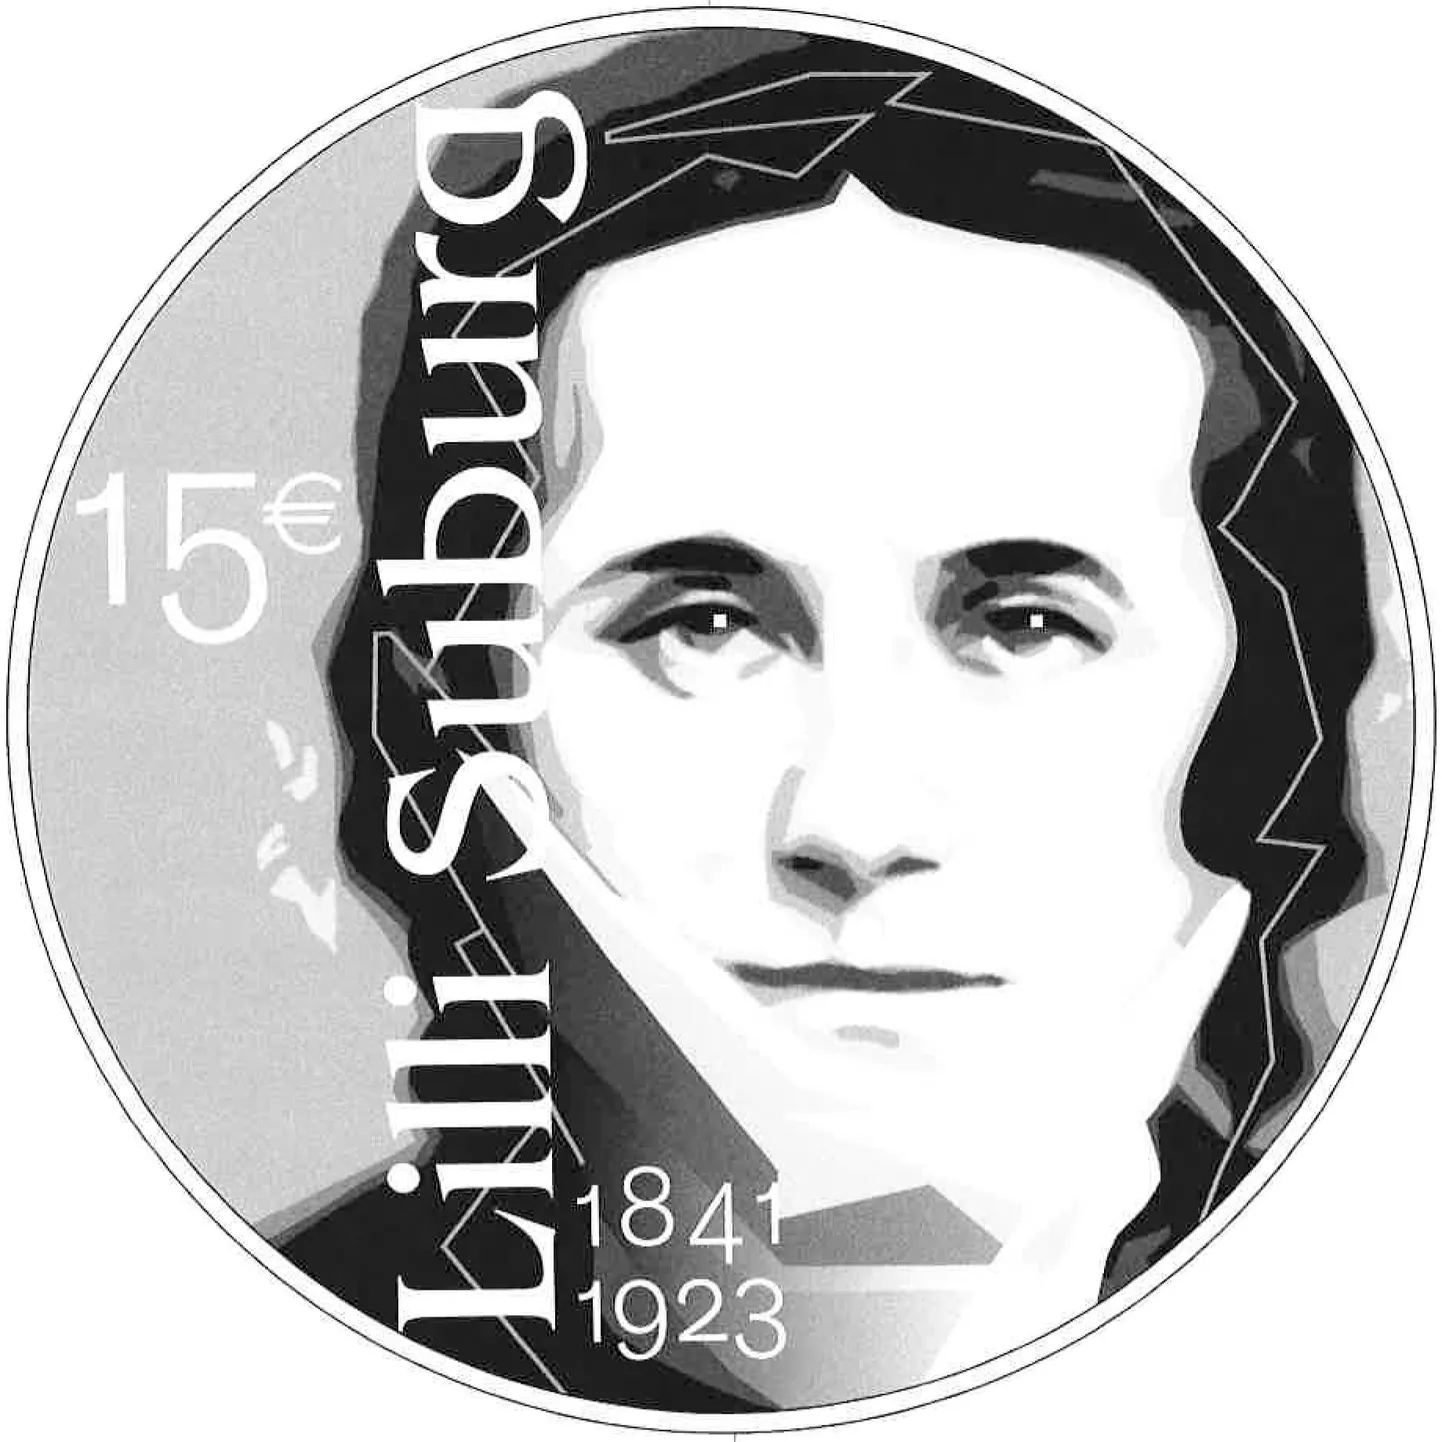 Feminist Lilli Suburgile pühendatud hõbemünt antakse välja järgmisel aastal.